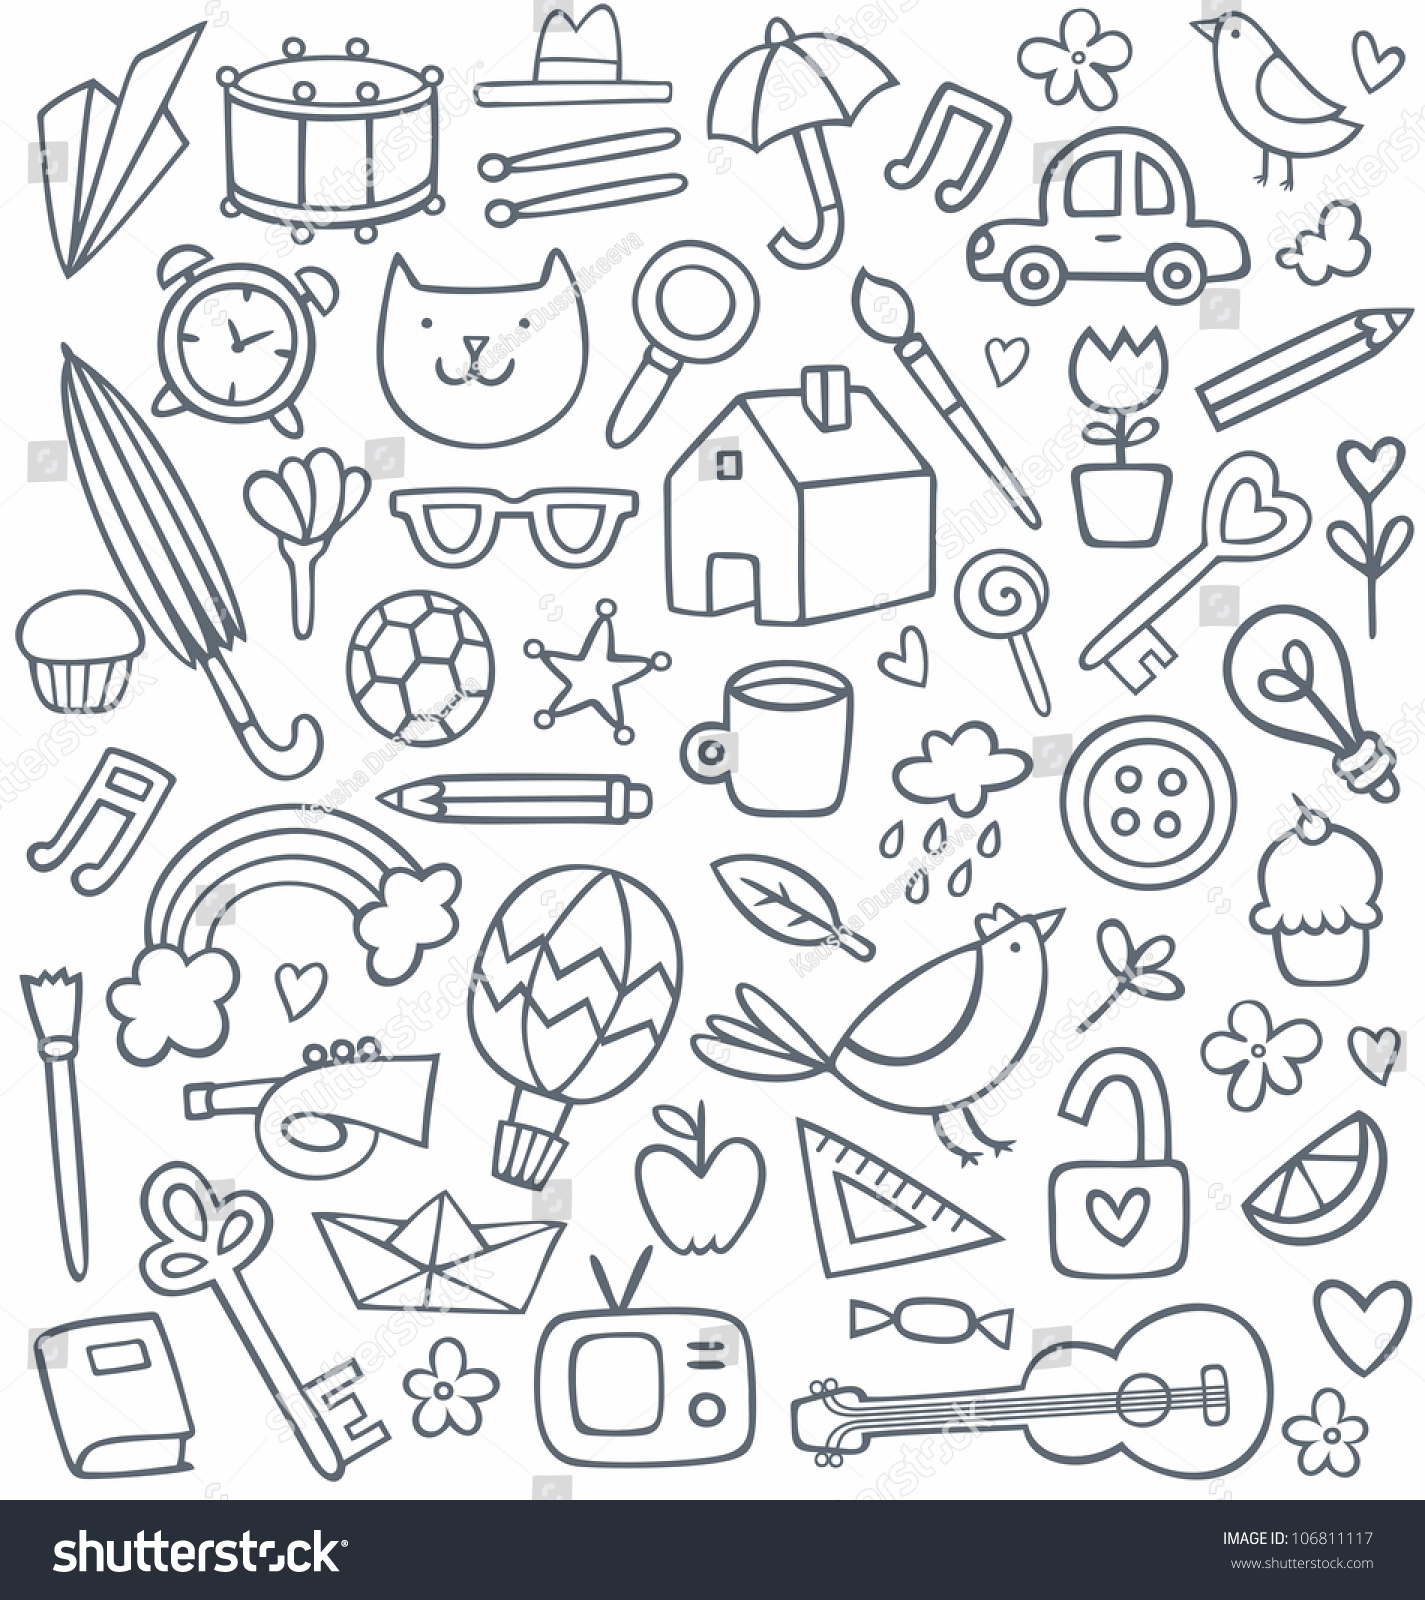 Vector Set Of 50 Different Doodles - 106811117 : Shutterstock